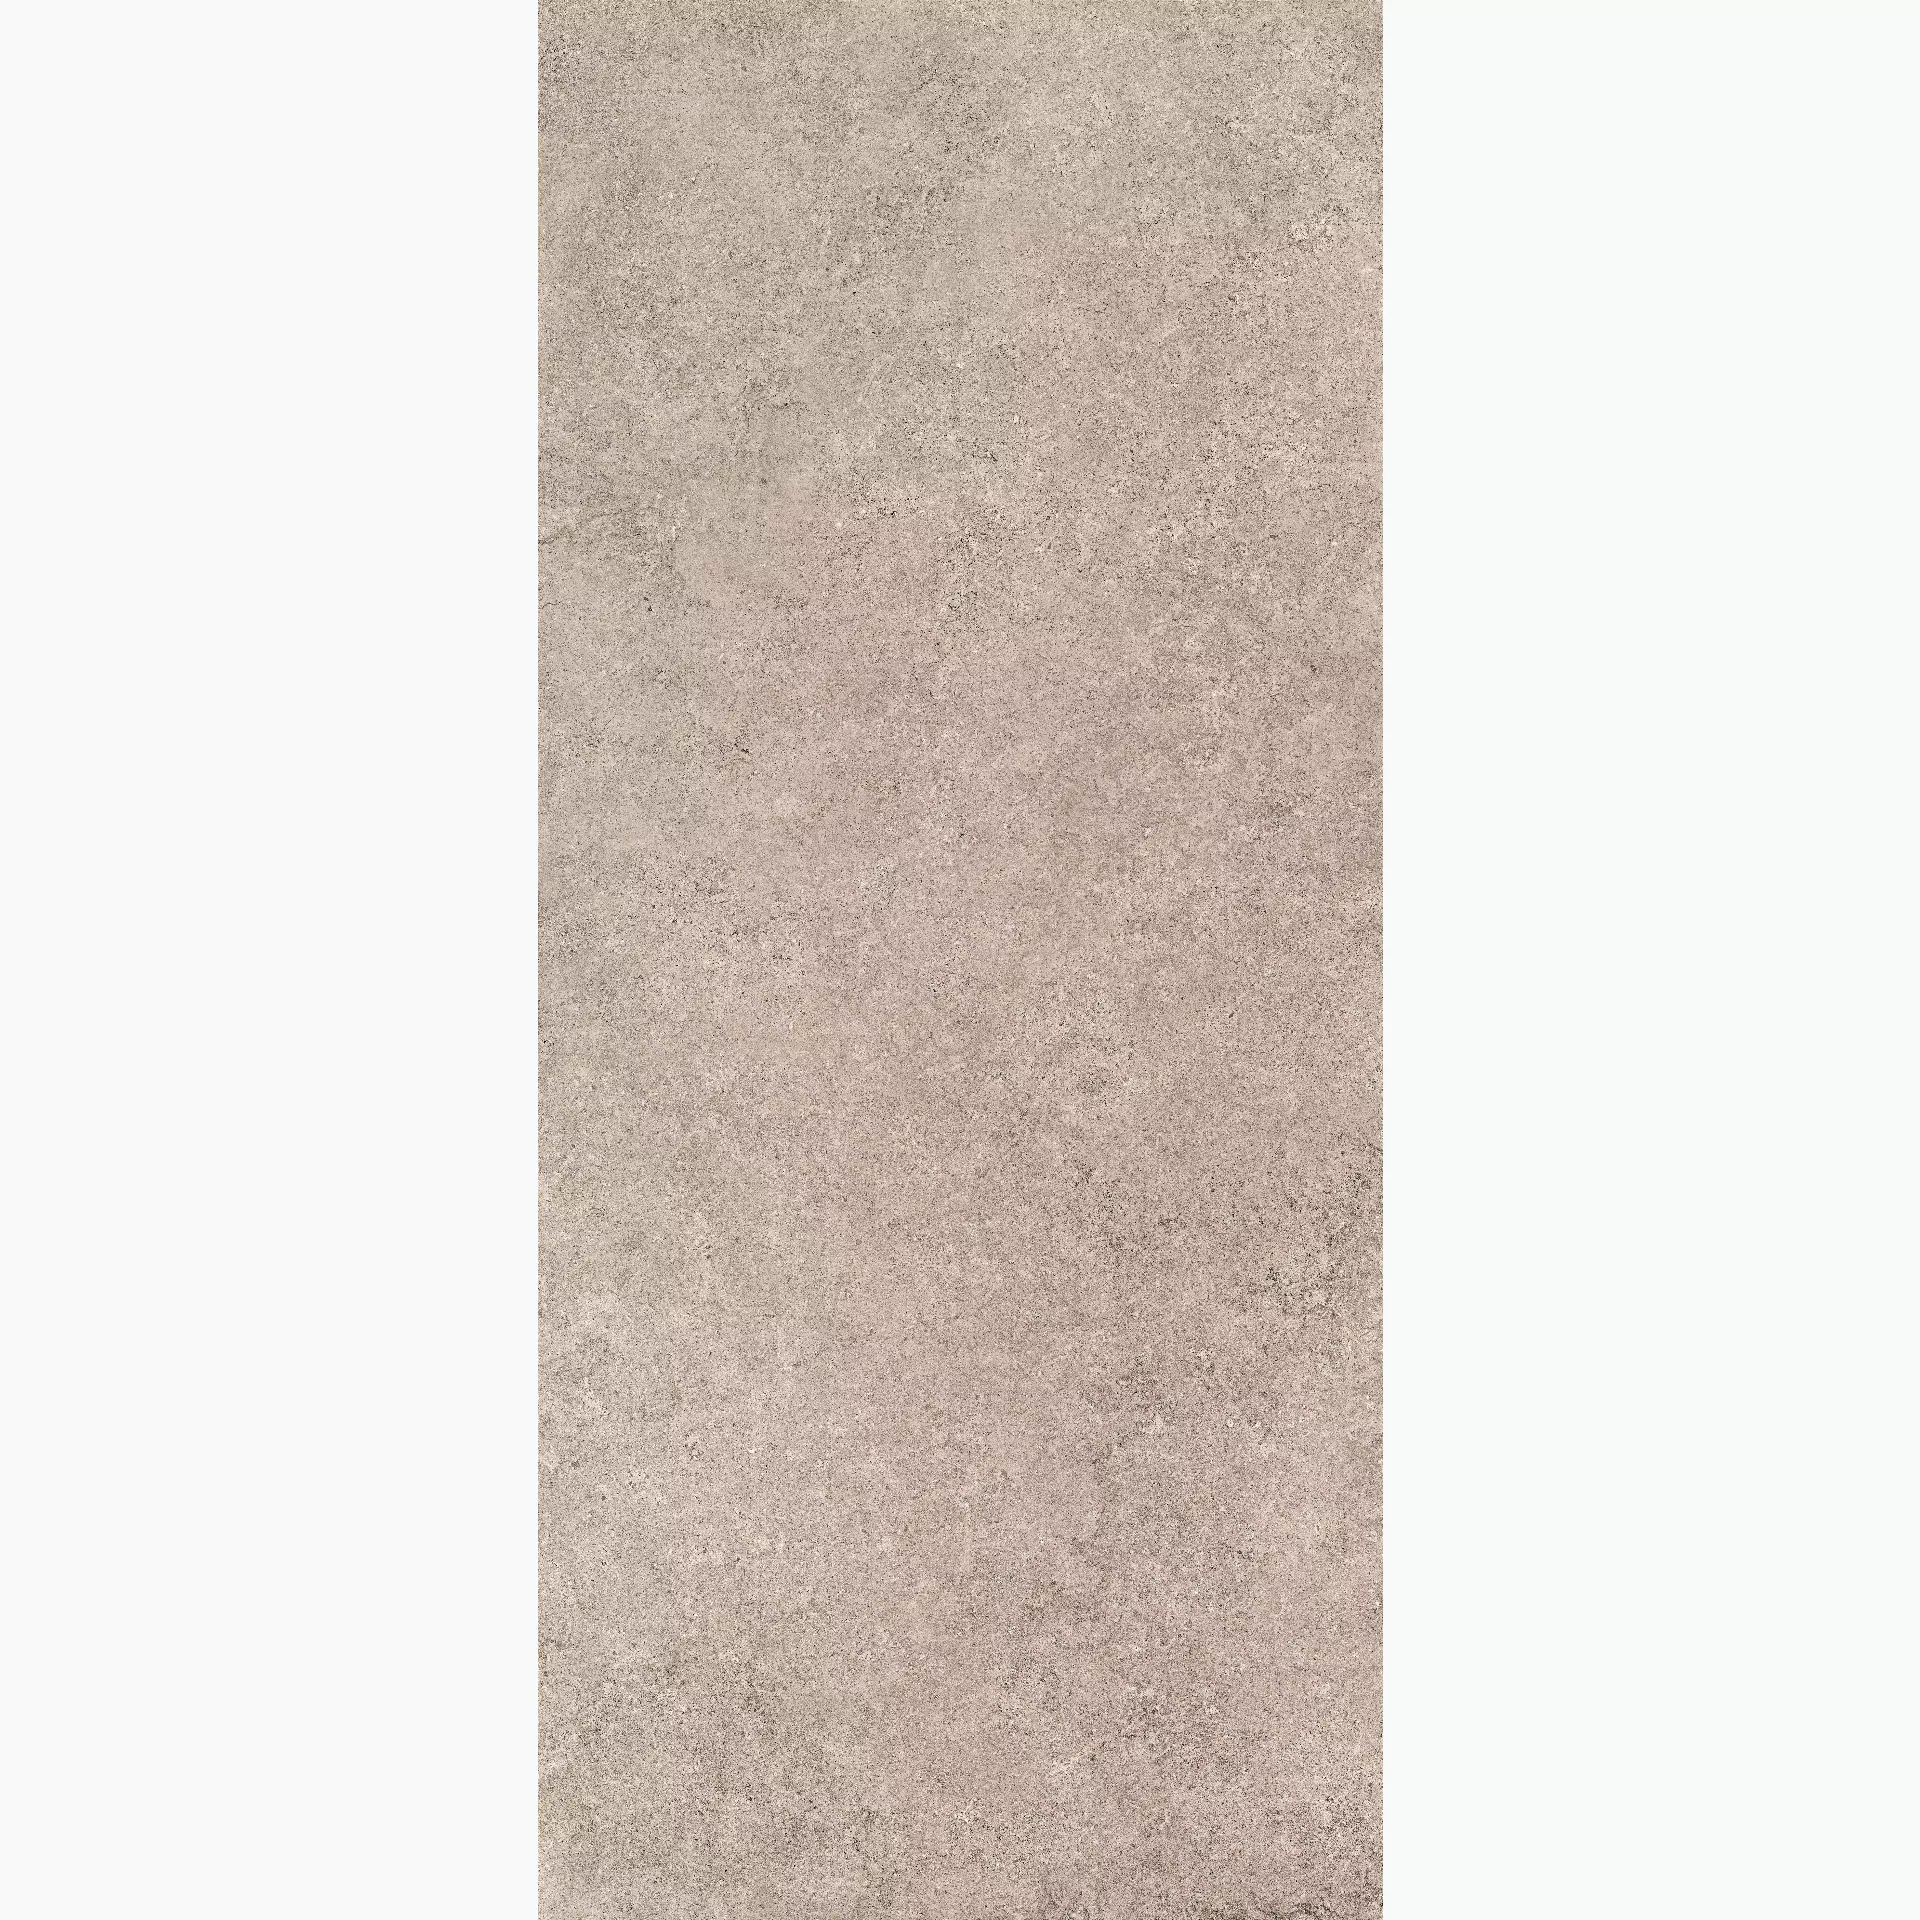 Cottodeste Kerlite Pura Sand Chiseled EK6PU80 120x278cm rectified 6,5mm